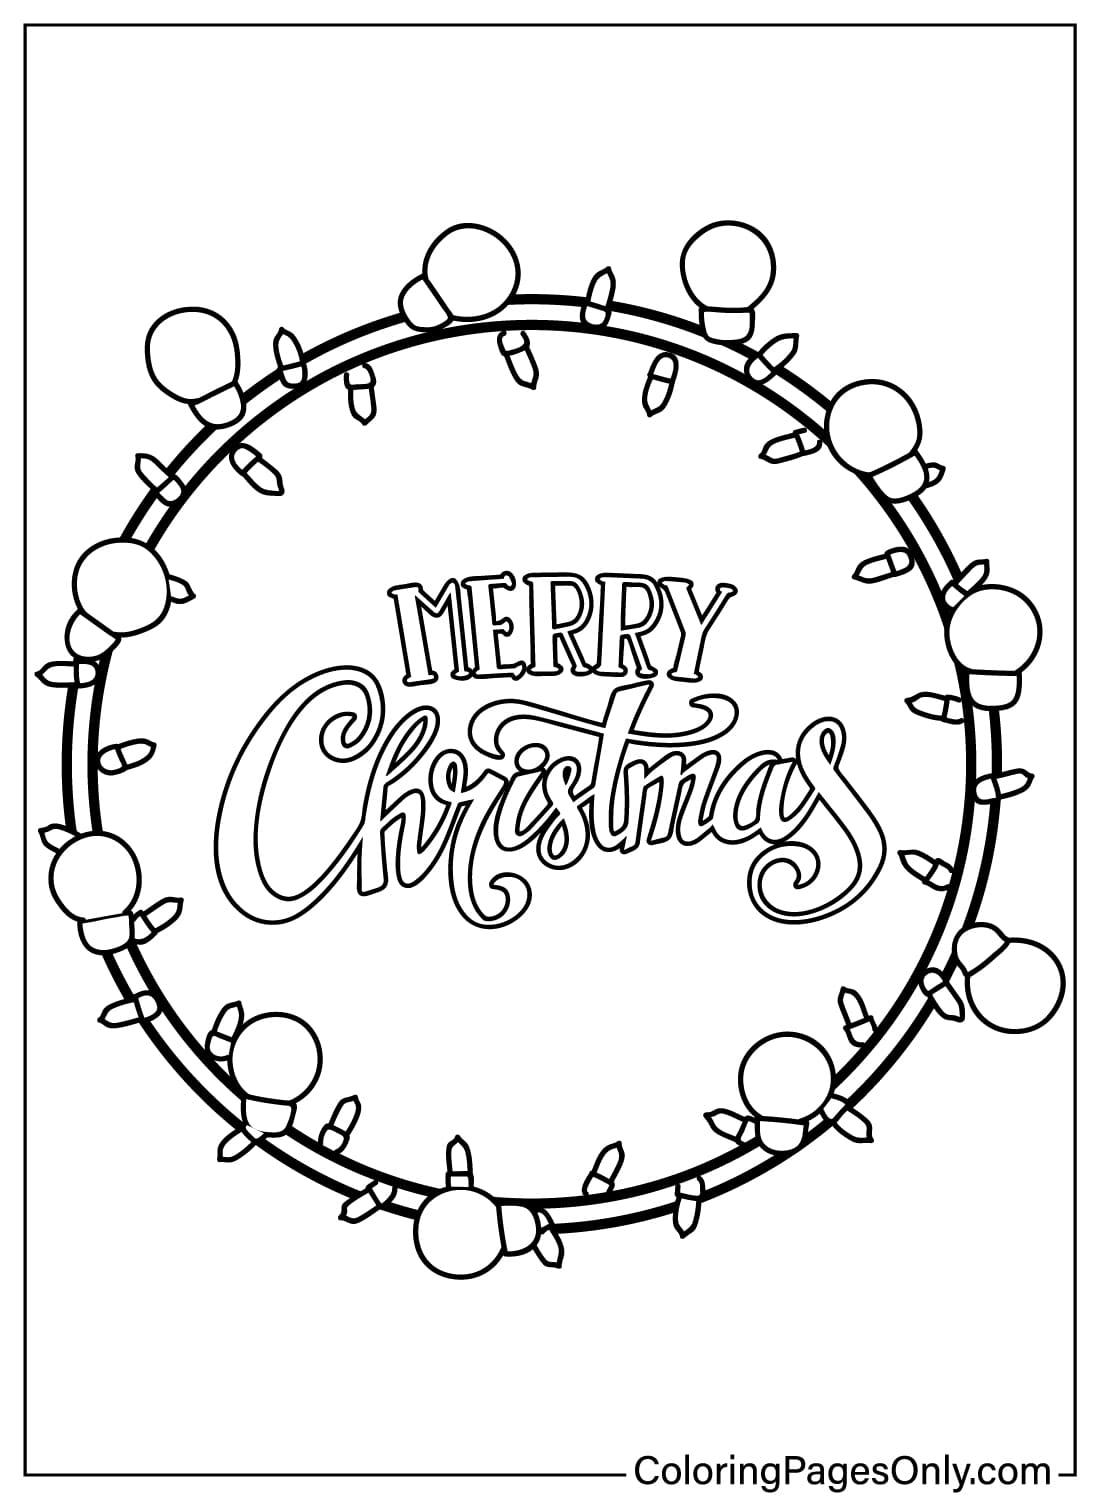 Бесплатная раскраска Рождественские гирлянды из мультфильма «Рождественские гирлянды» для печати